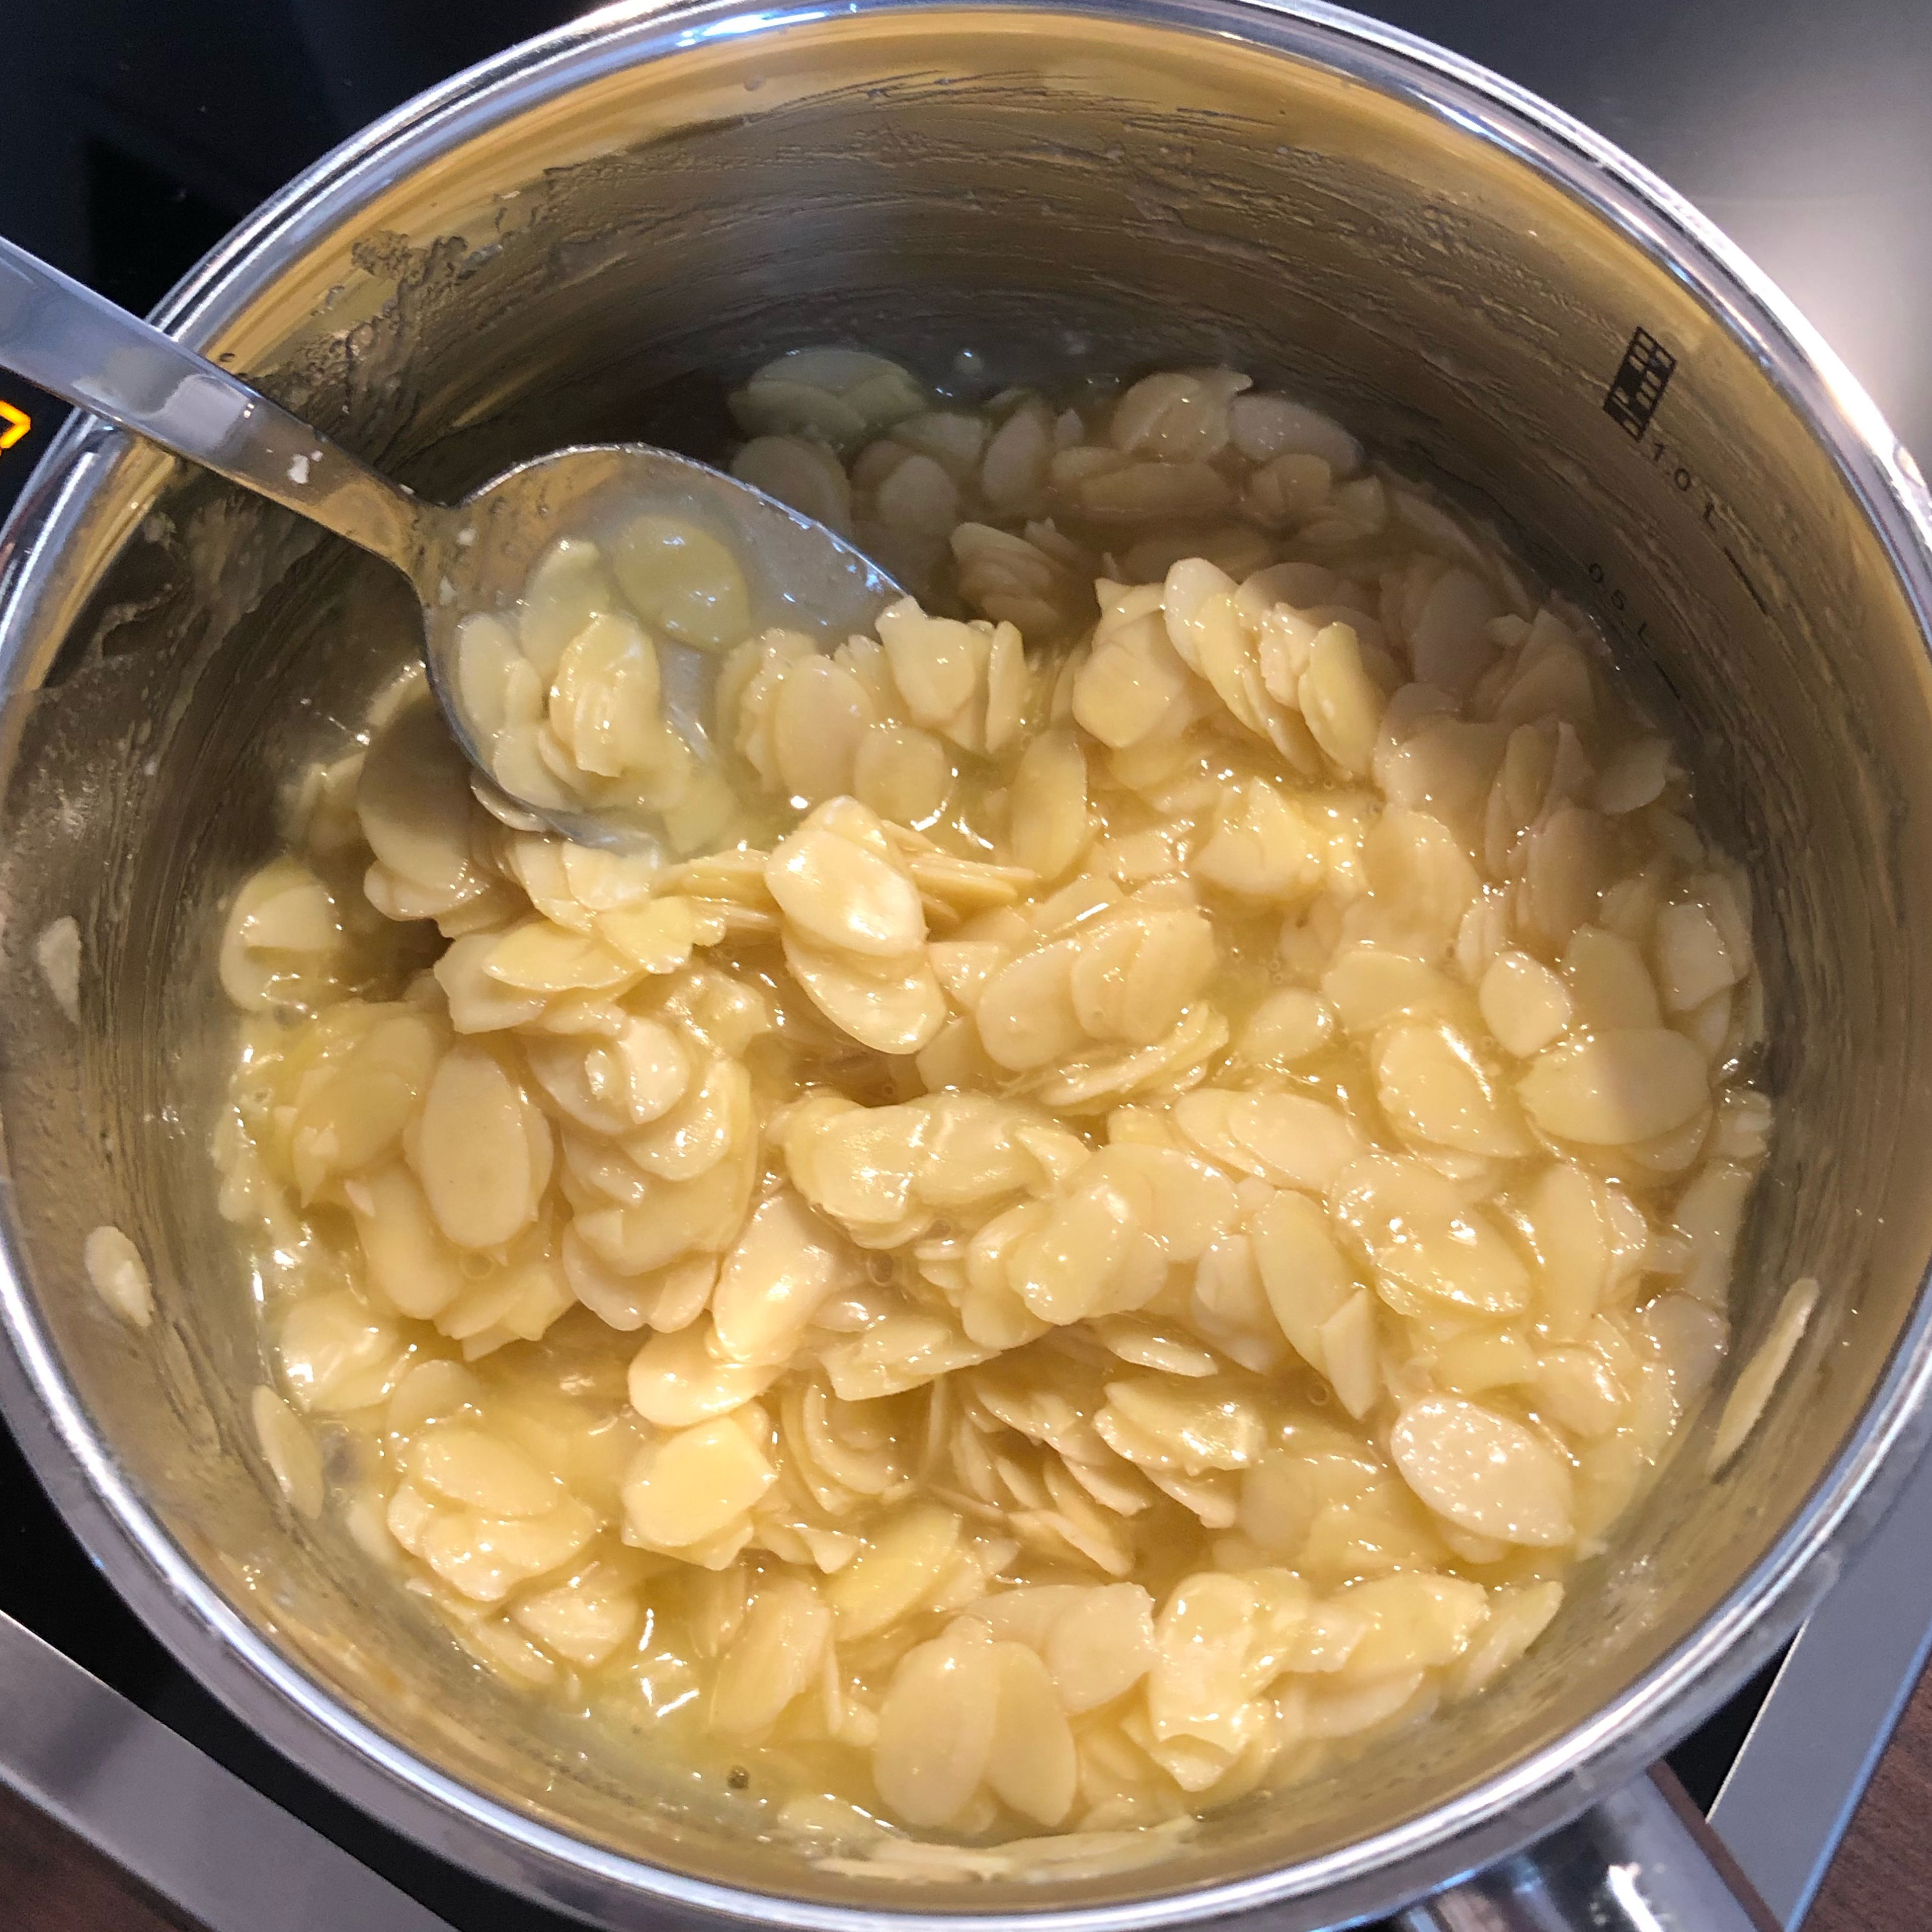 In der Zwischenzeit wird die Mandelmasse vorbereitet. Hierzu in einem Topf die Butter schmelzen. Zucker, Weizenmehl, Milch, gehobelte Mandeln und eine Prise Salz hinzufügen und unter stetigen Rühren für 10 Minuten köcheln lassen.